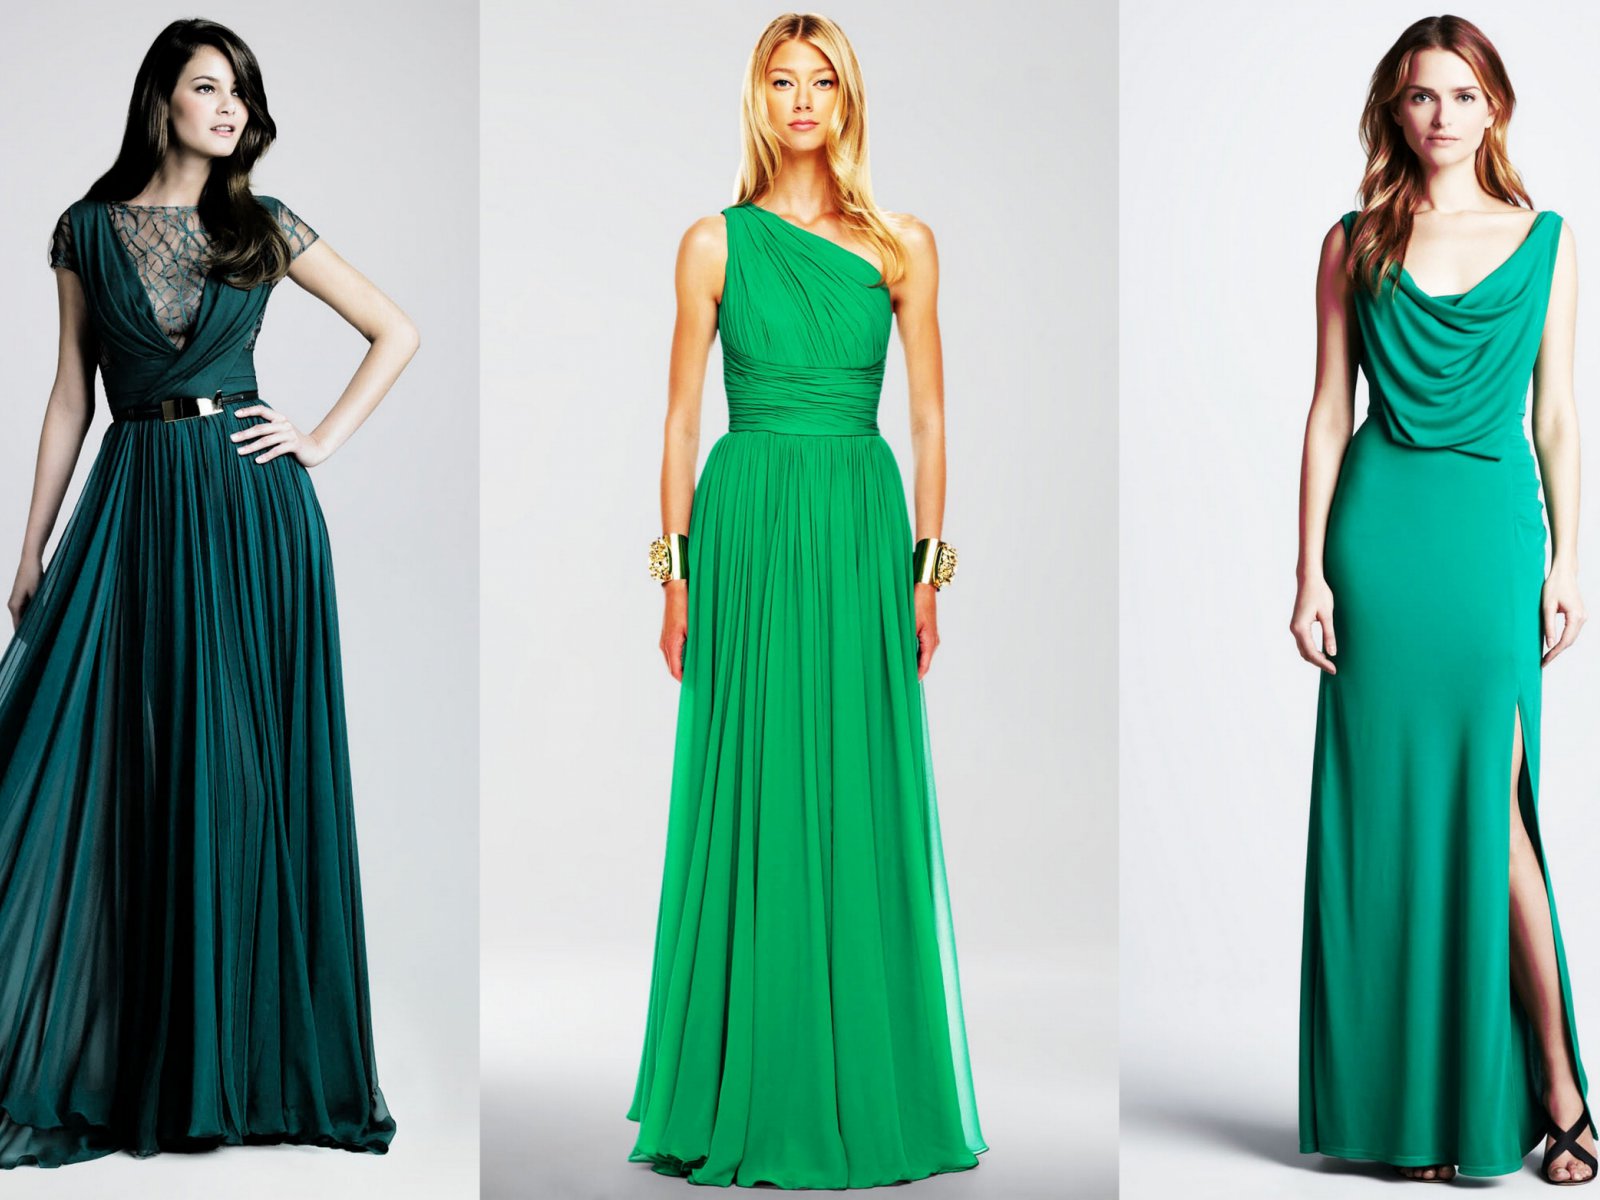 Платье зеленого цвета